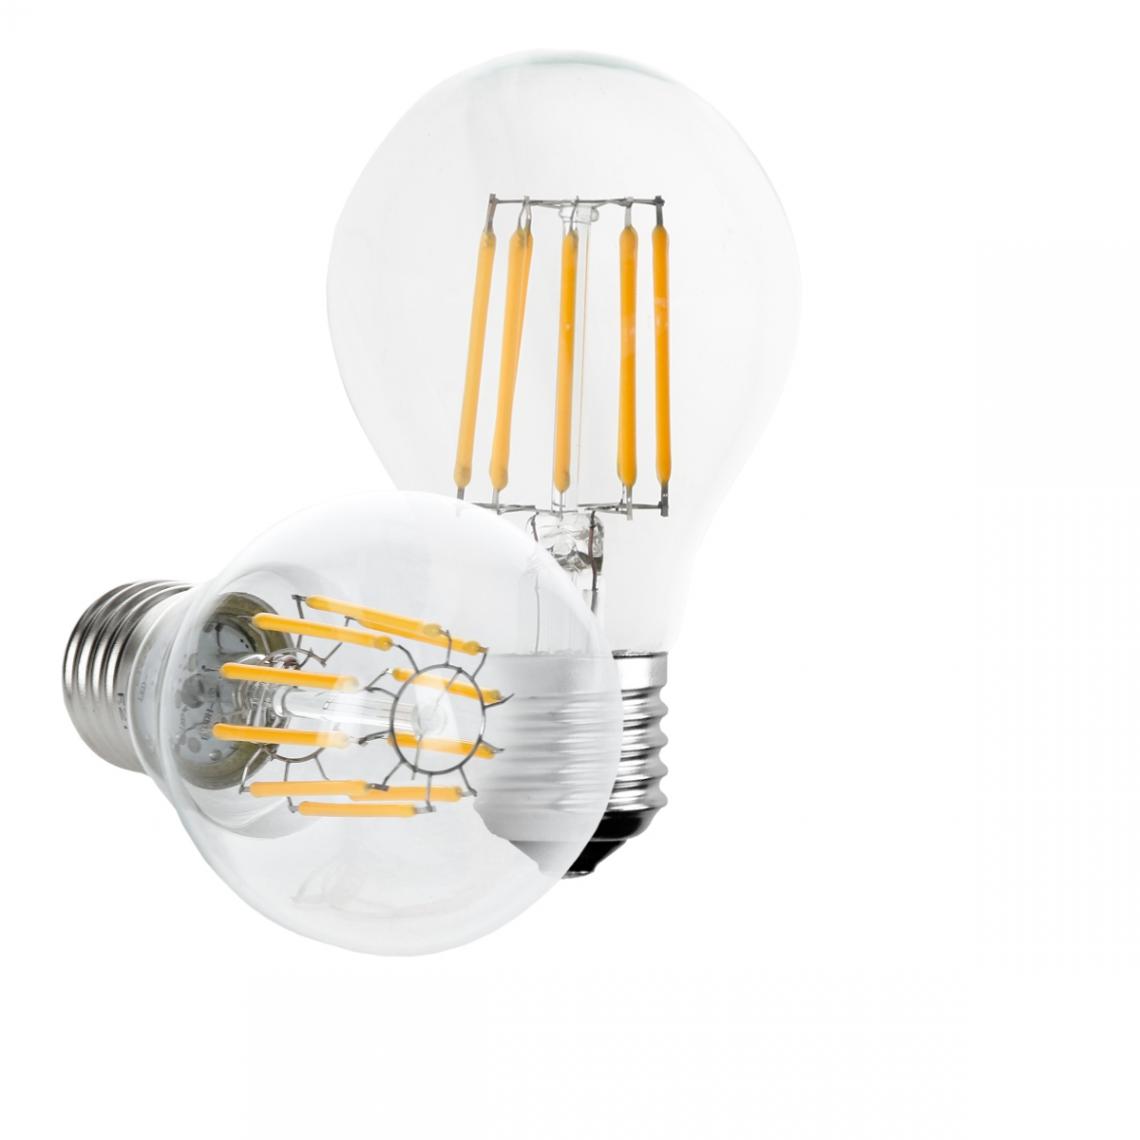 Ecd Germany - 4 x ampoule LED à filament E27 10W blanc chaud - Ampoules LED